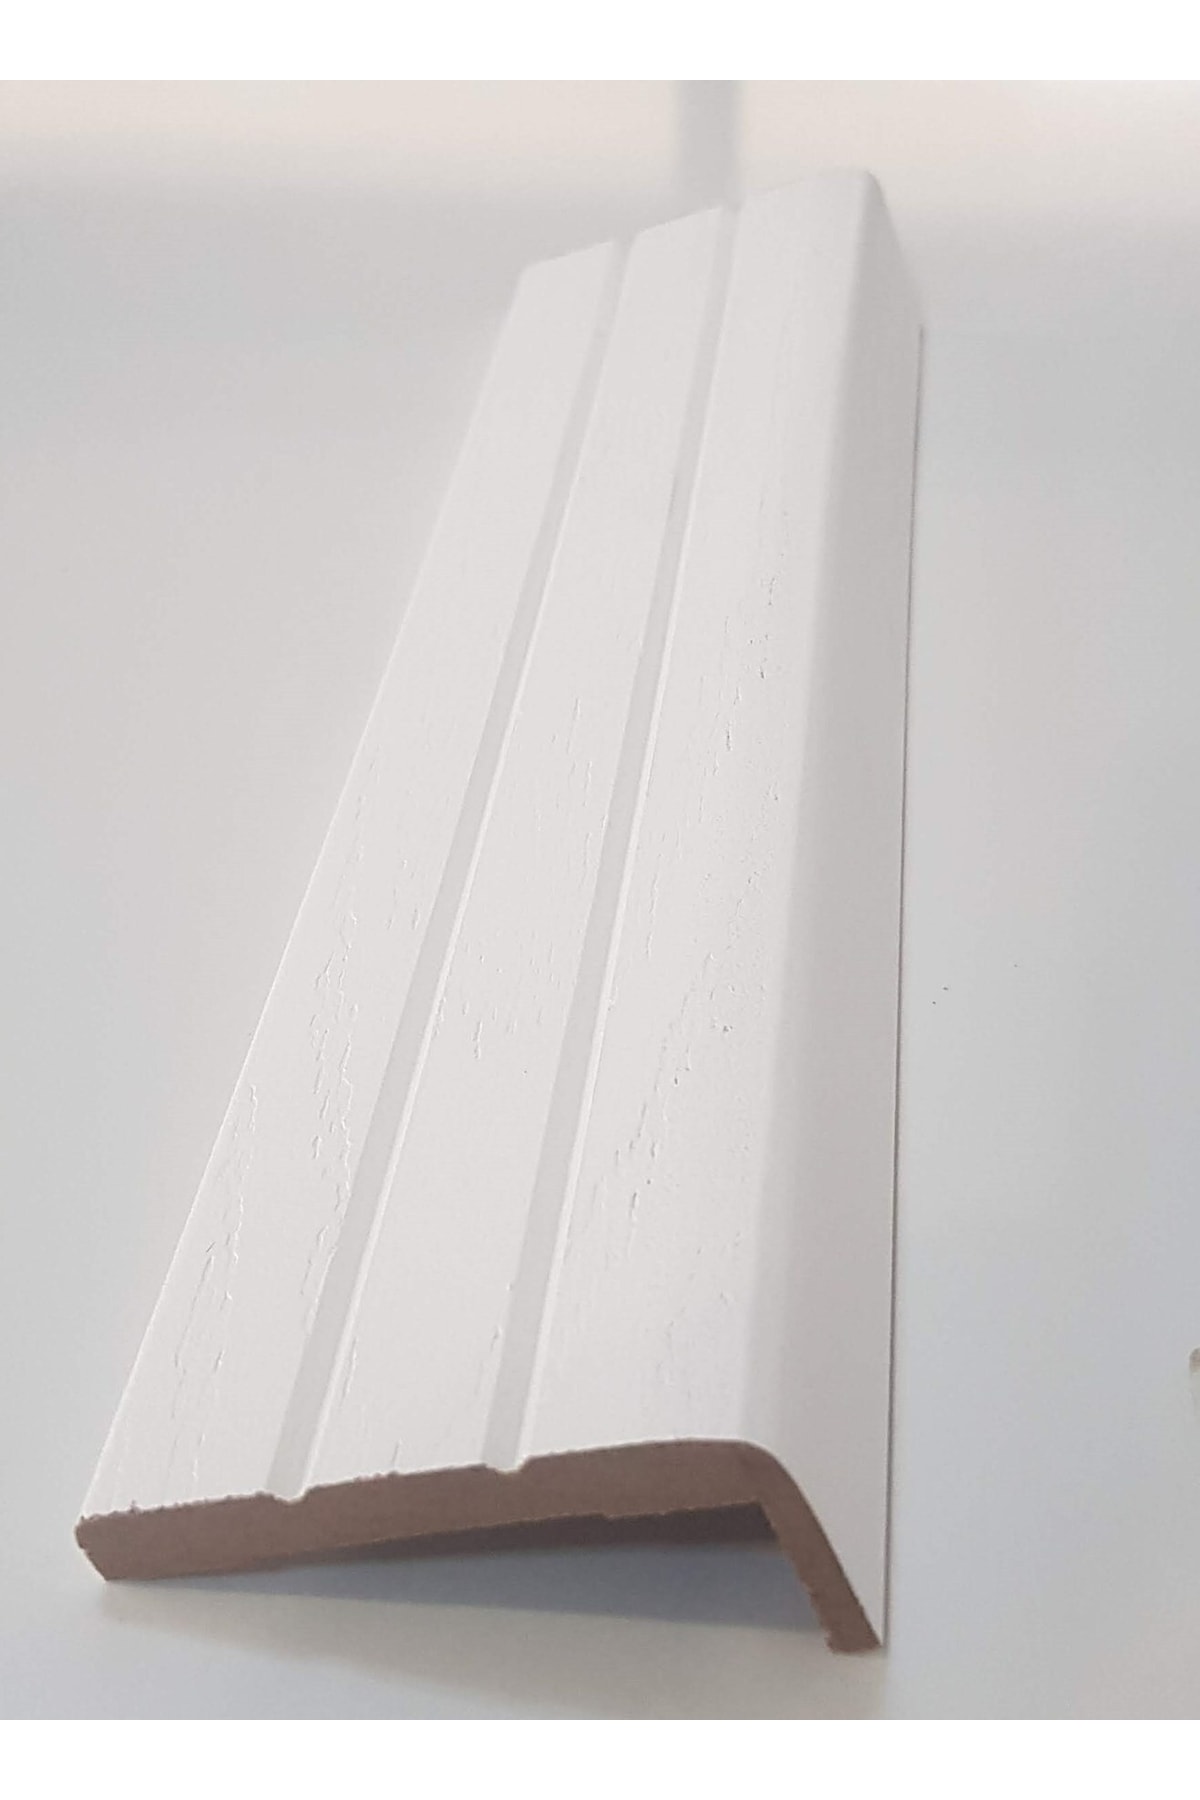 NSP Amerikan Kapı Pervazı Beyaz Boyalı Oluklu 220cm 5'li